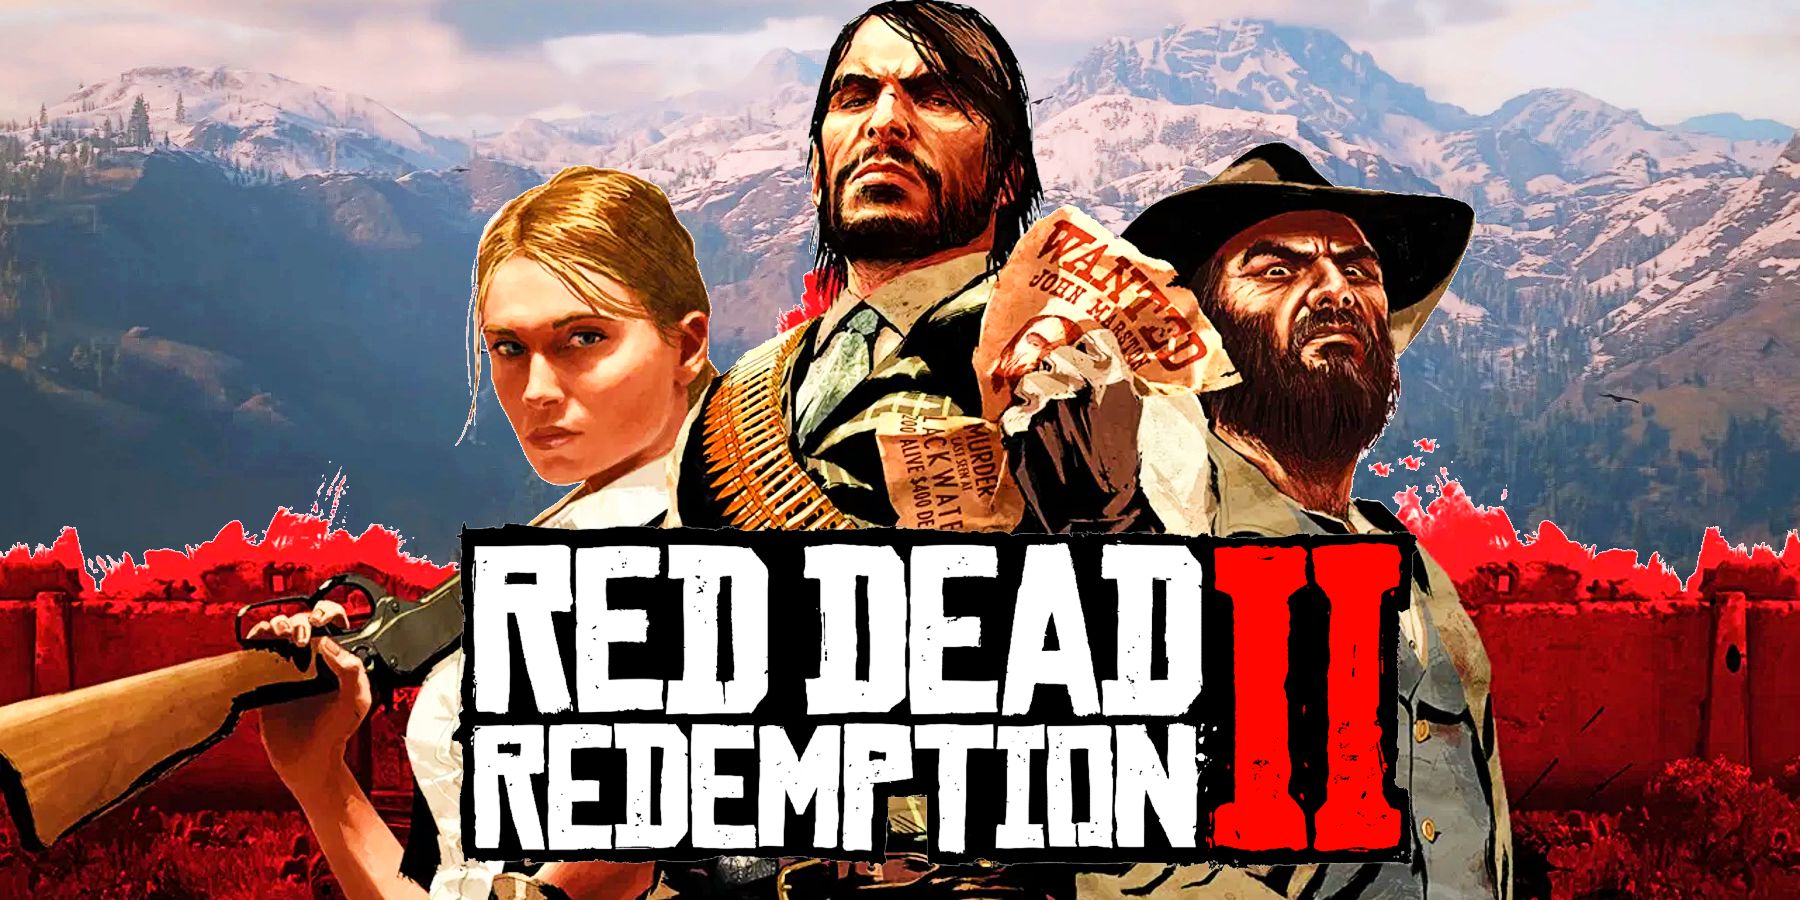 A Red Dead Redemption ventilátor a folytatásban ismerteti a hivatalos képernyőképeket